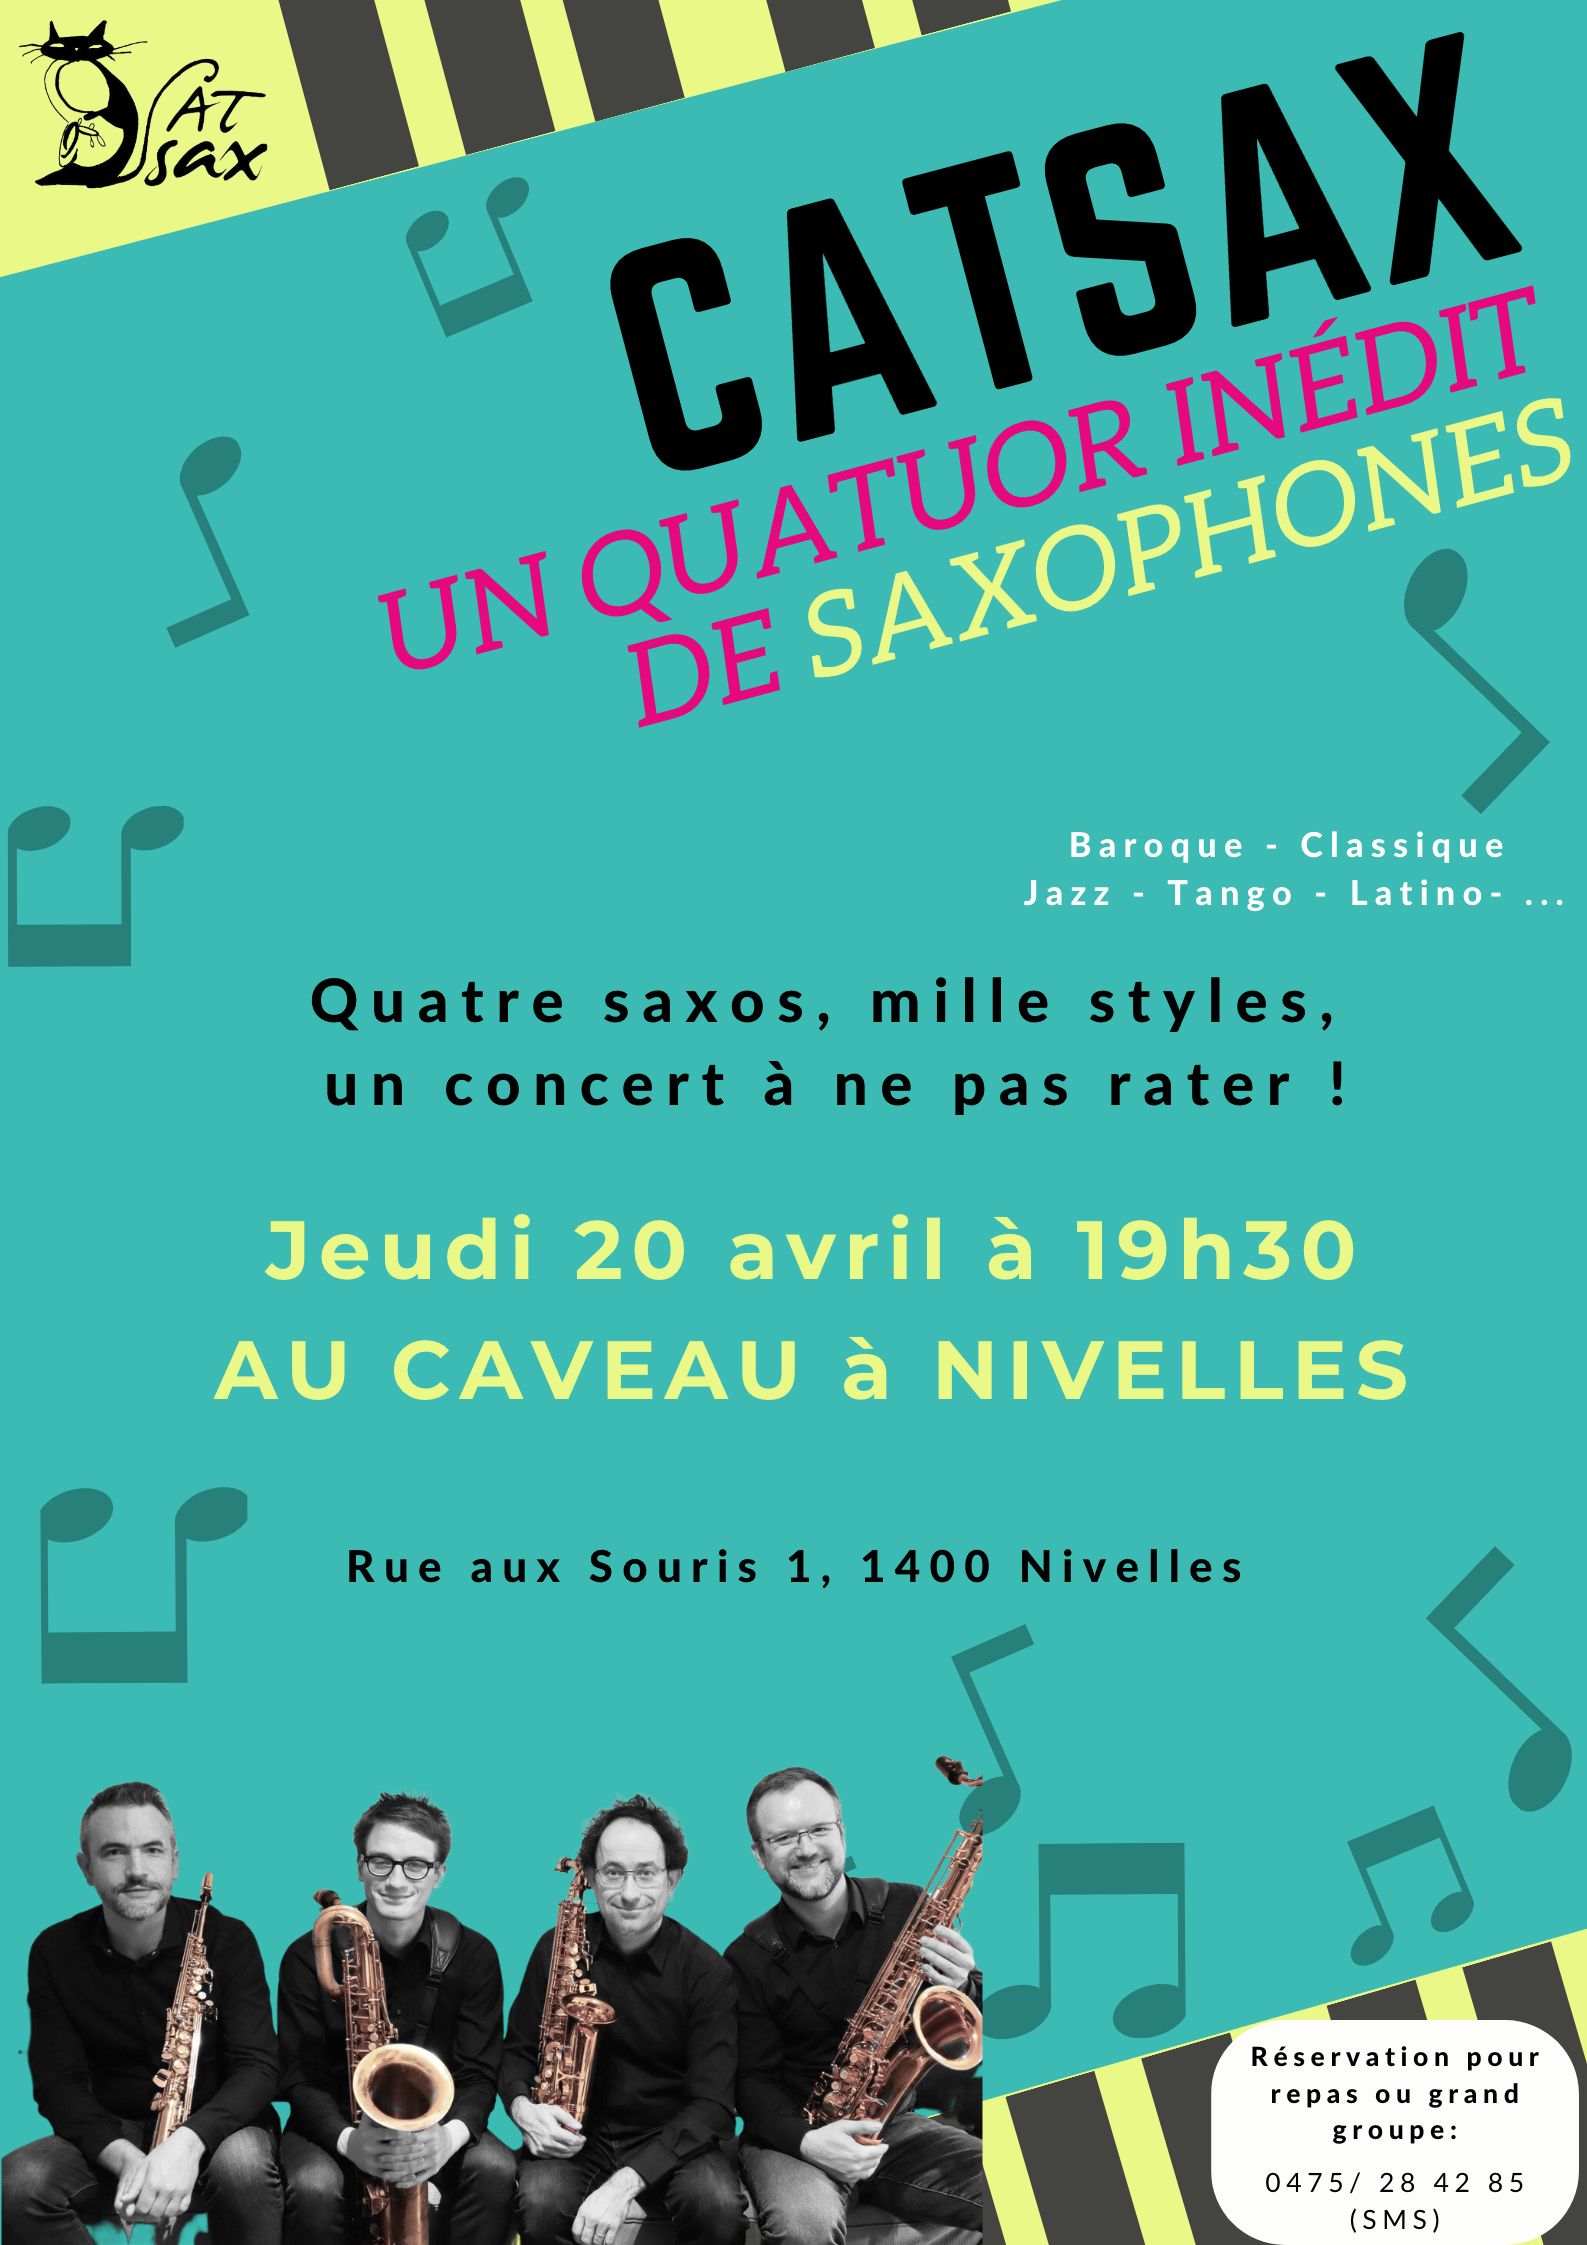 Concert au Caveau à Nivelles - 20 avril à 19h30